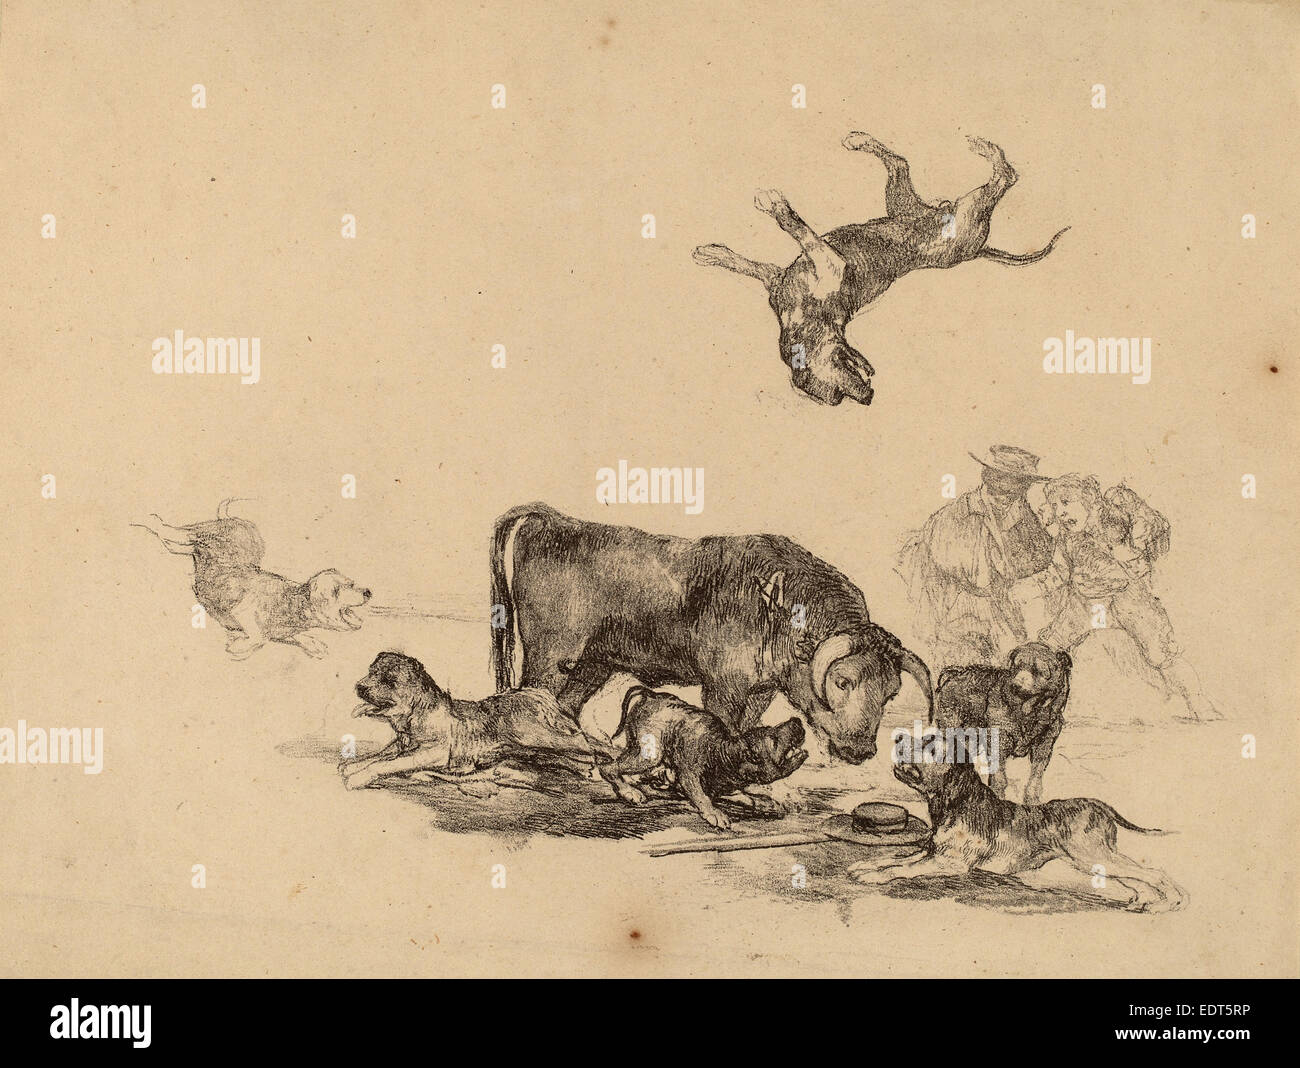 Francisco de Goya, Taureau attaqué par des chiens, Espagnol, 1746 - 1828, ch. Lithographie, 1825 Banque D'Images